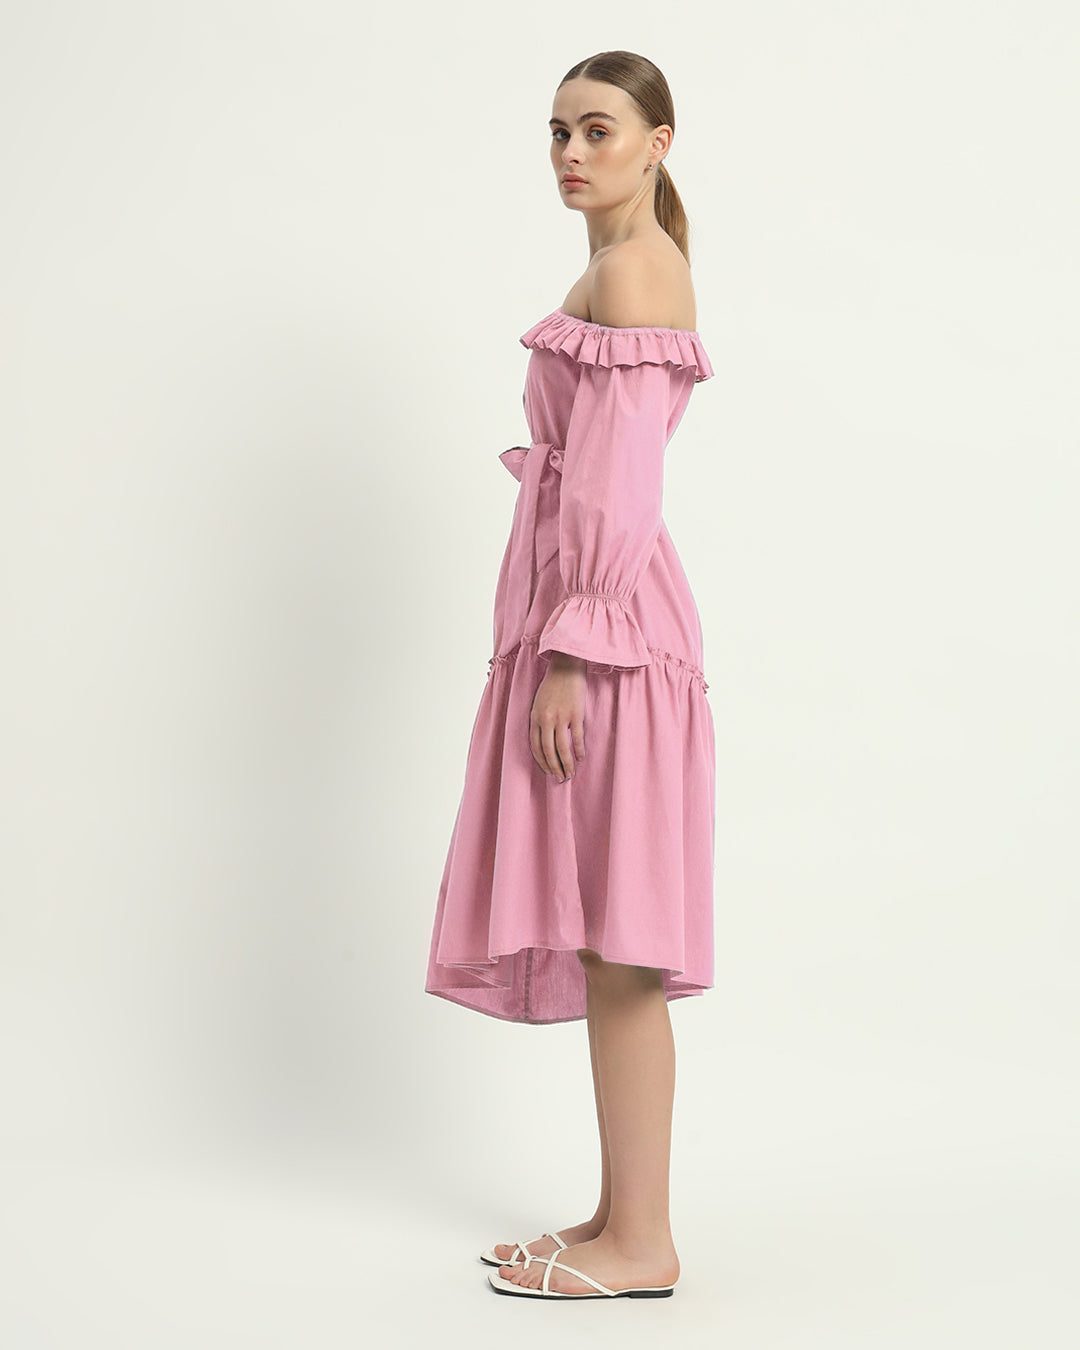 The Fondant Pink Stellata Cotton Dress